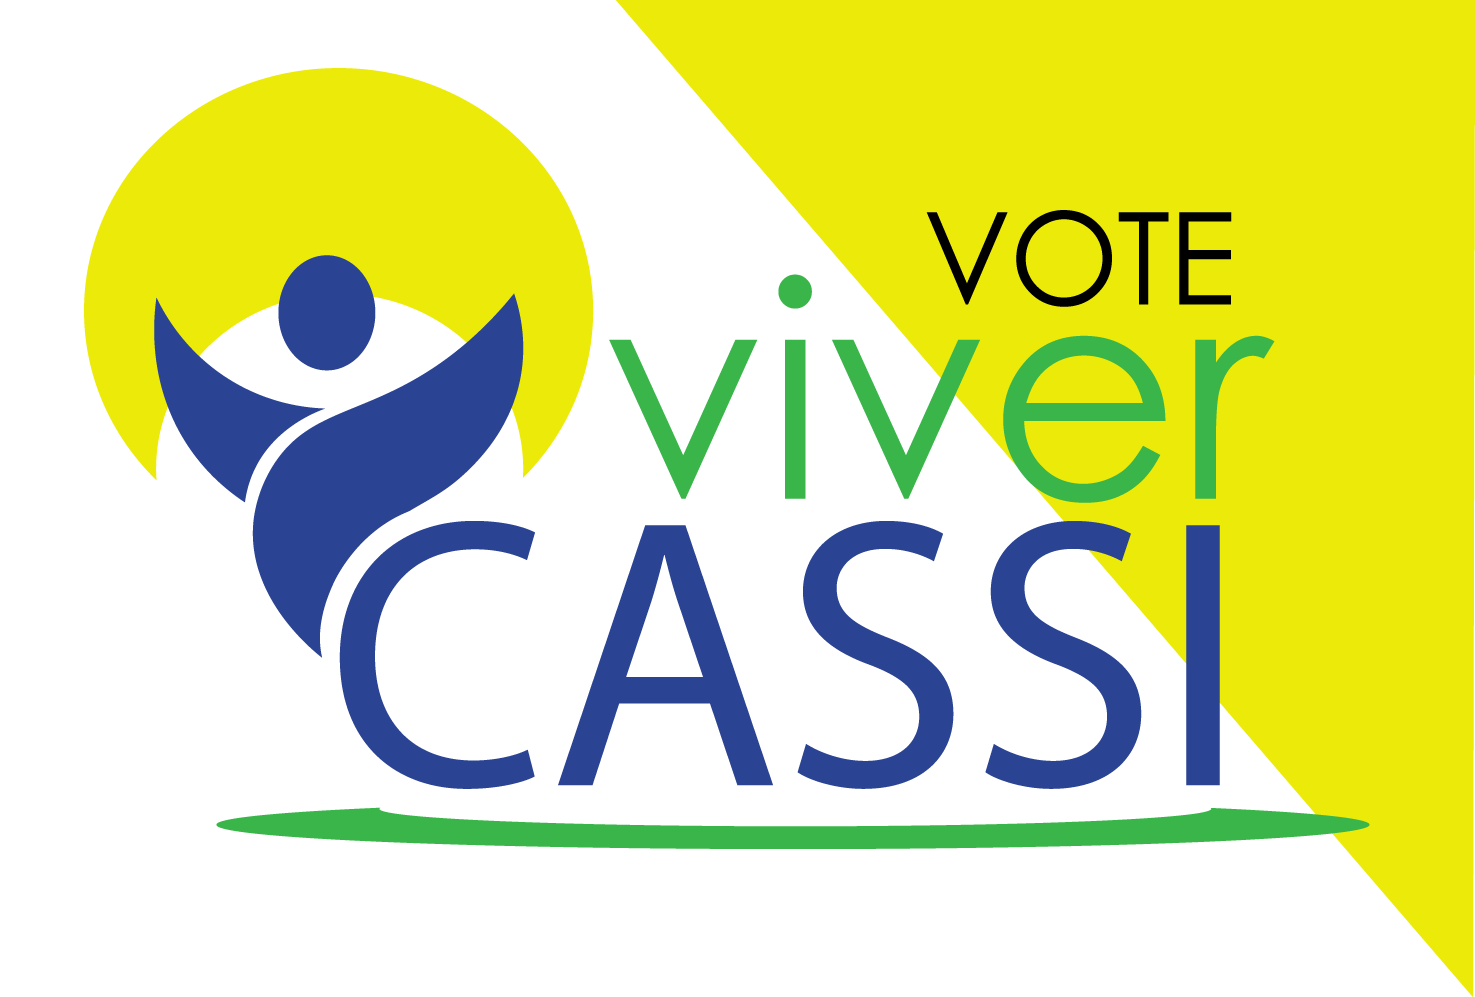 Eleições Cassi: Contraf-CUT apoia Chapas 4 e 33 – Viver Cassi